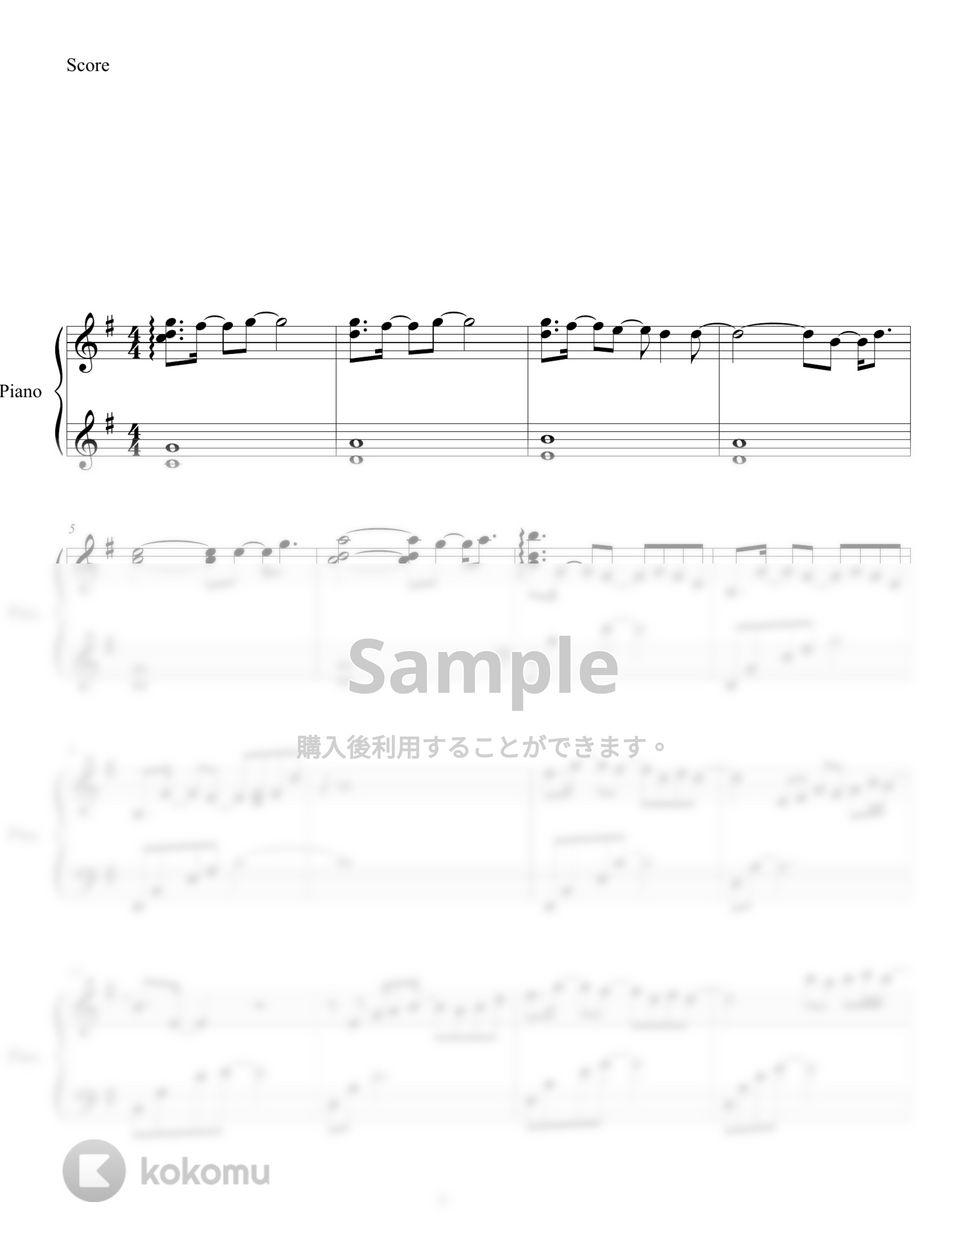 鬼滅の刃OST - 紅蓮華 (cozy ver.) by ifyoulikeme